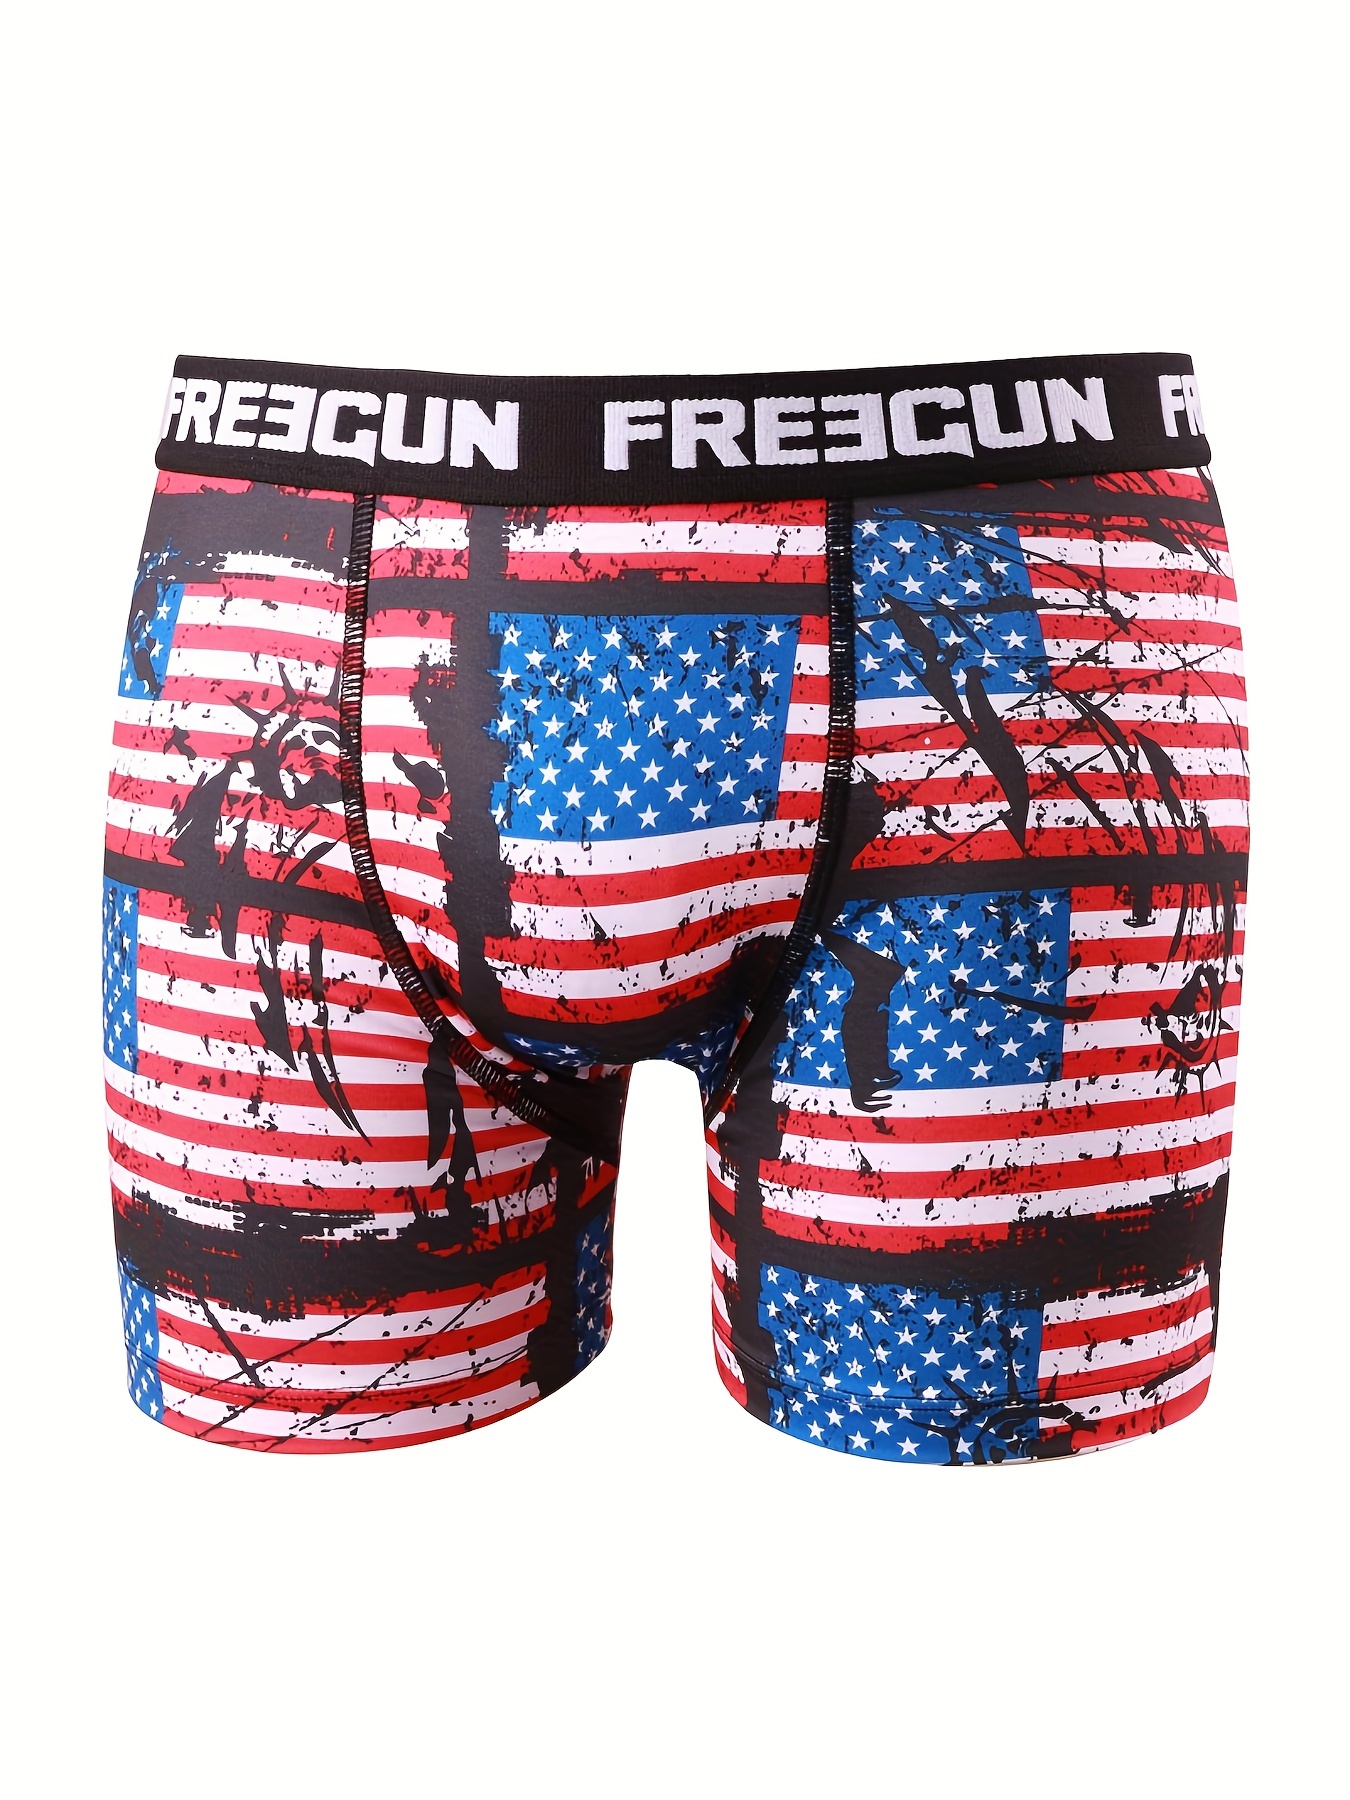  Men's Funny Underwear Boxer Briefs, Patriotic USA